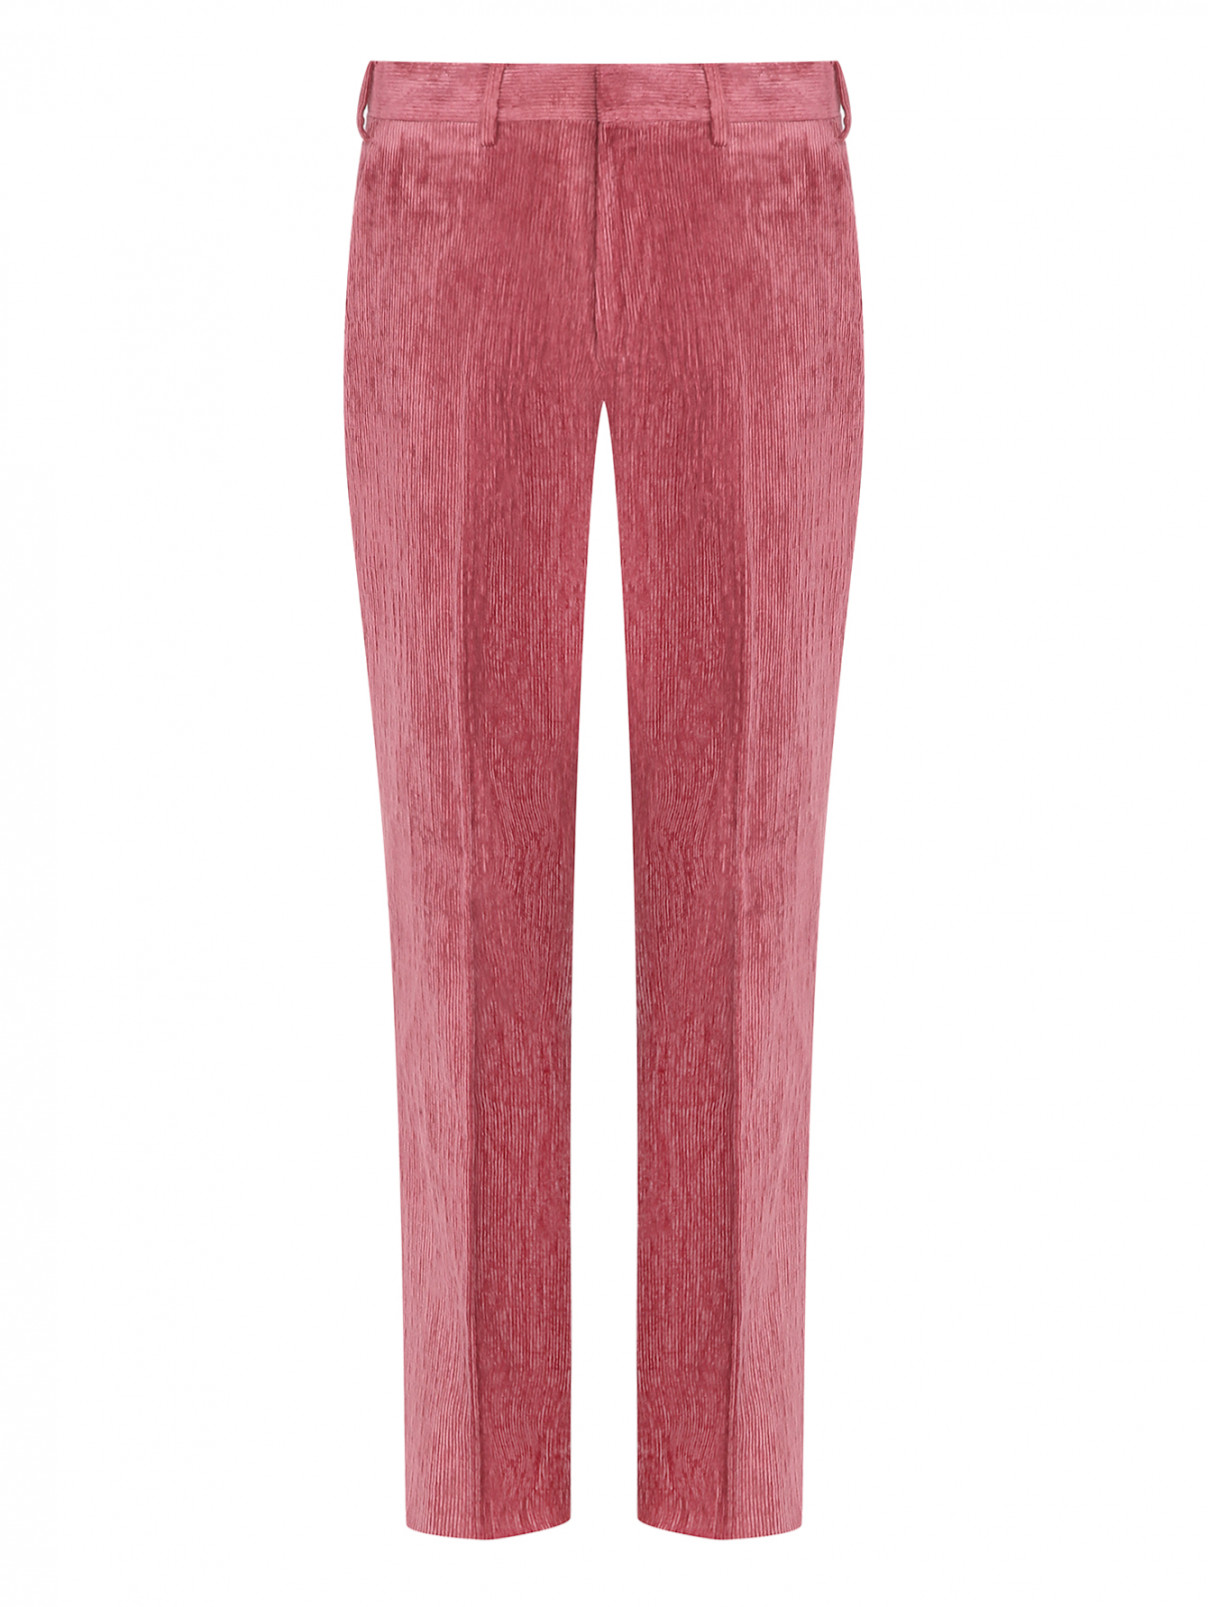 Вельветовые брюки с карманами LARDINI  –  Общий вид  – Цвет:  Розовый